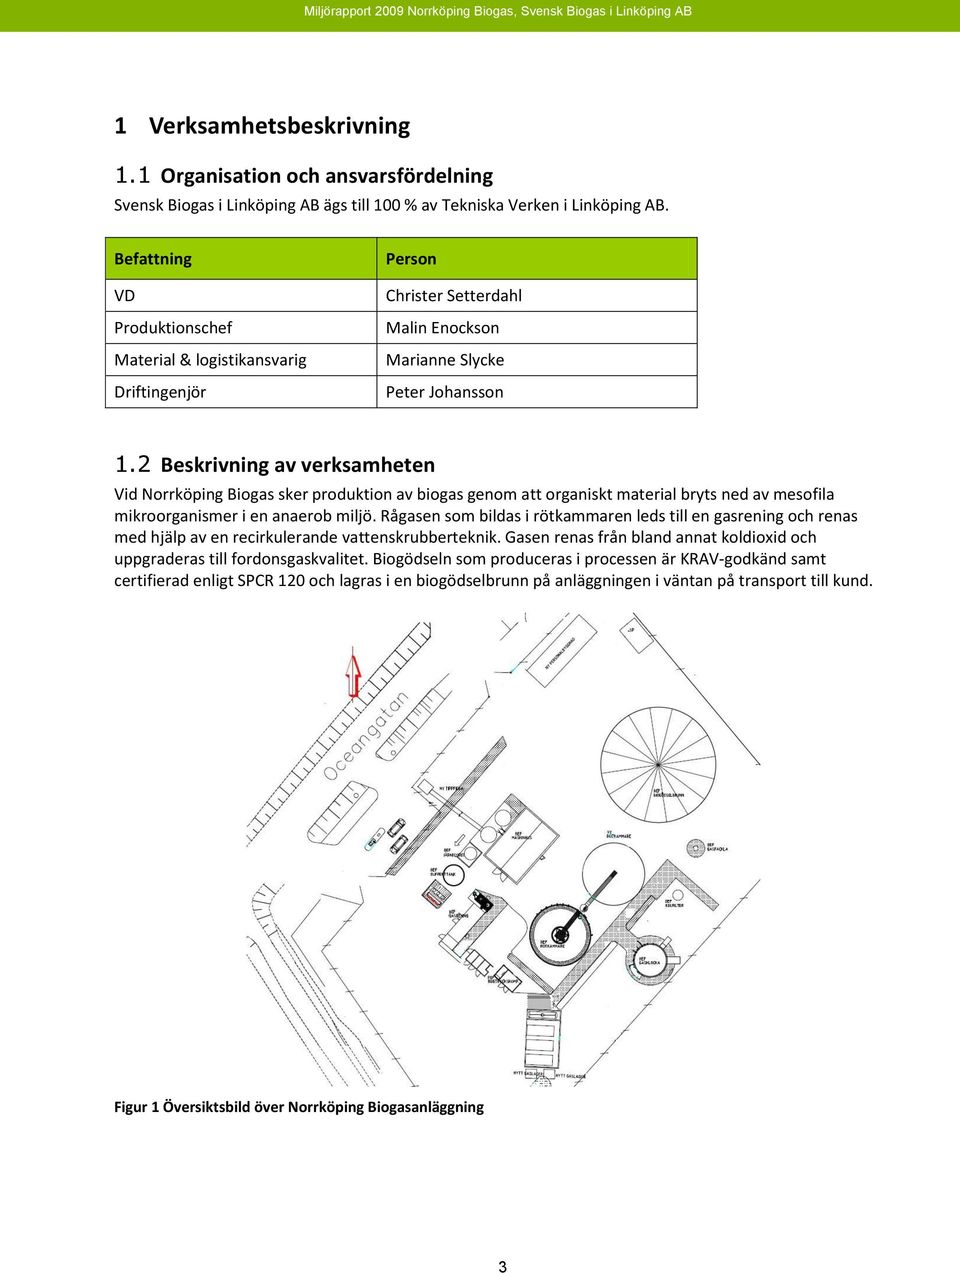 2 Beskrivning av verksamheten Vid Norrköping Biogas sker produktion av biogas genom att organiskt material bryts ned av mesofila mikroorganismer i en anaerob miljö.